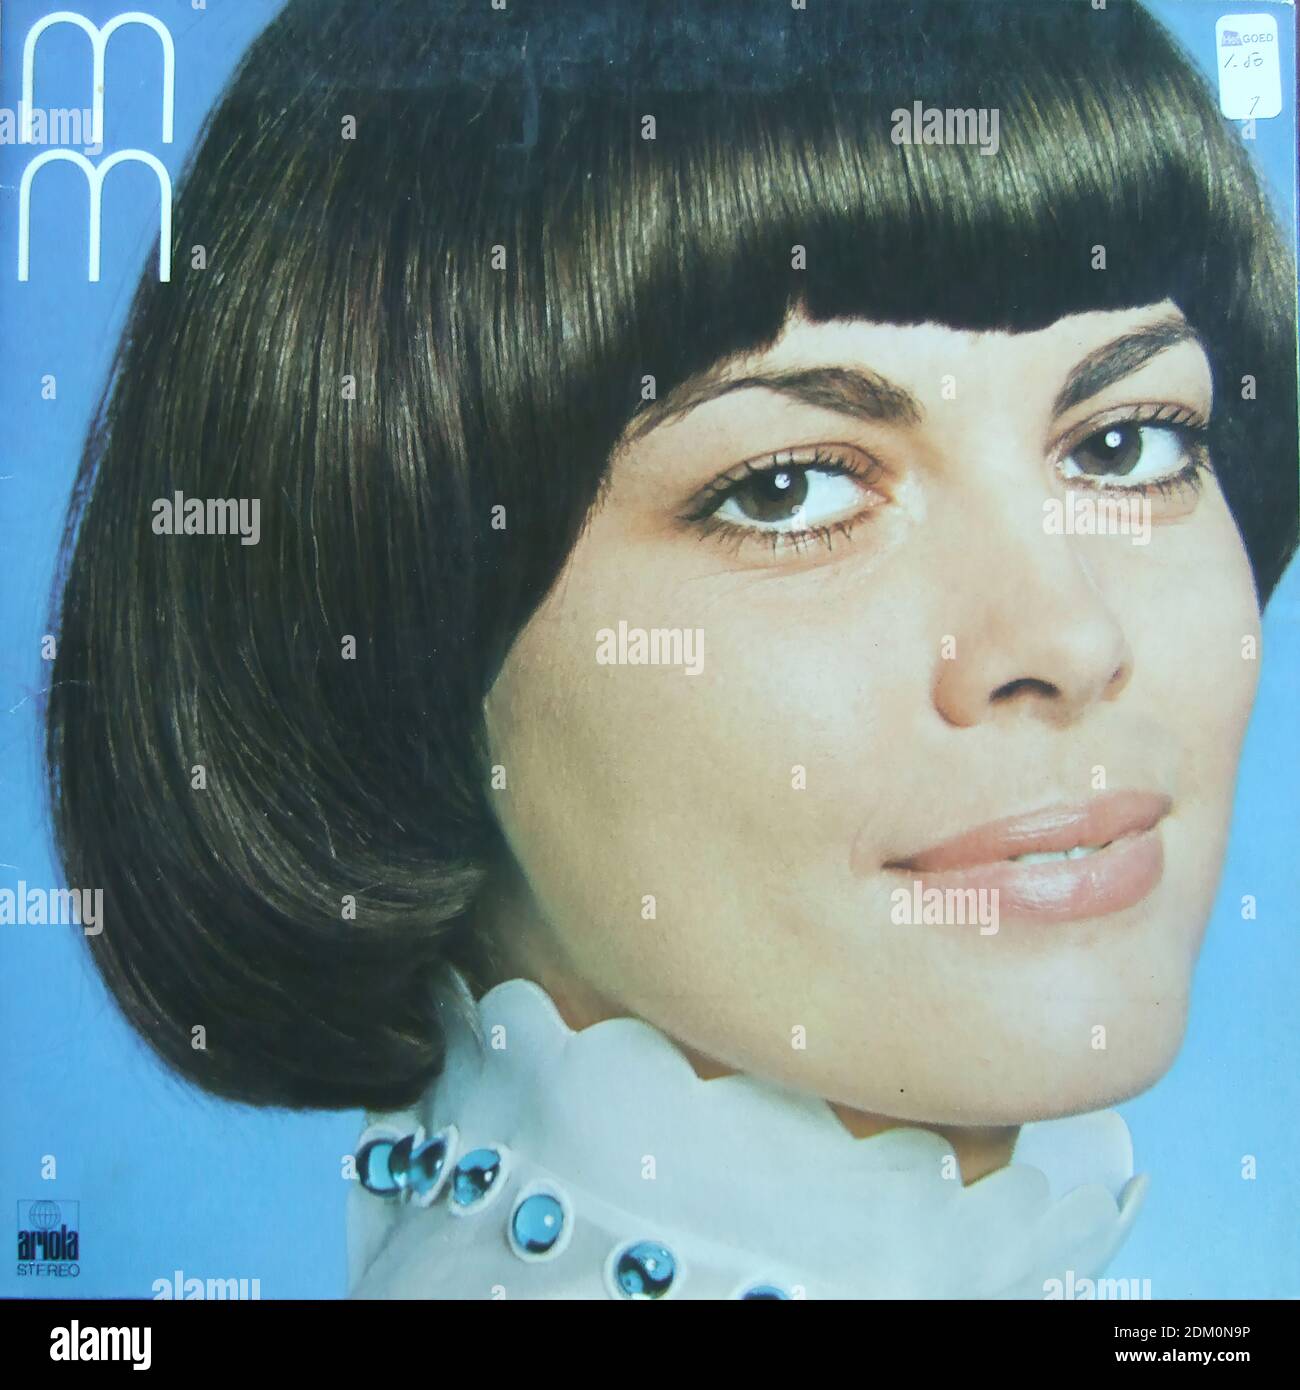 MM - Mireille Mathieu - 87275 IT - Vintage vinyl album cover Stock Photo -  Alamy